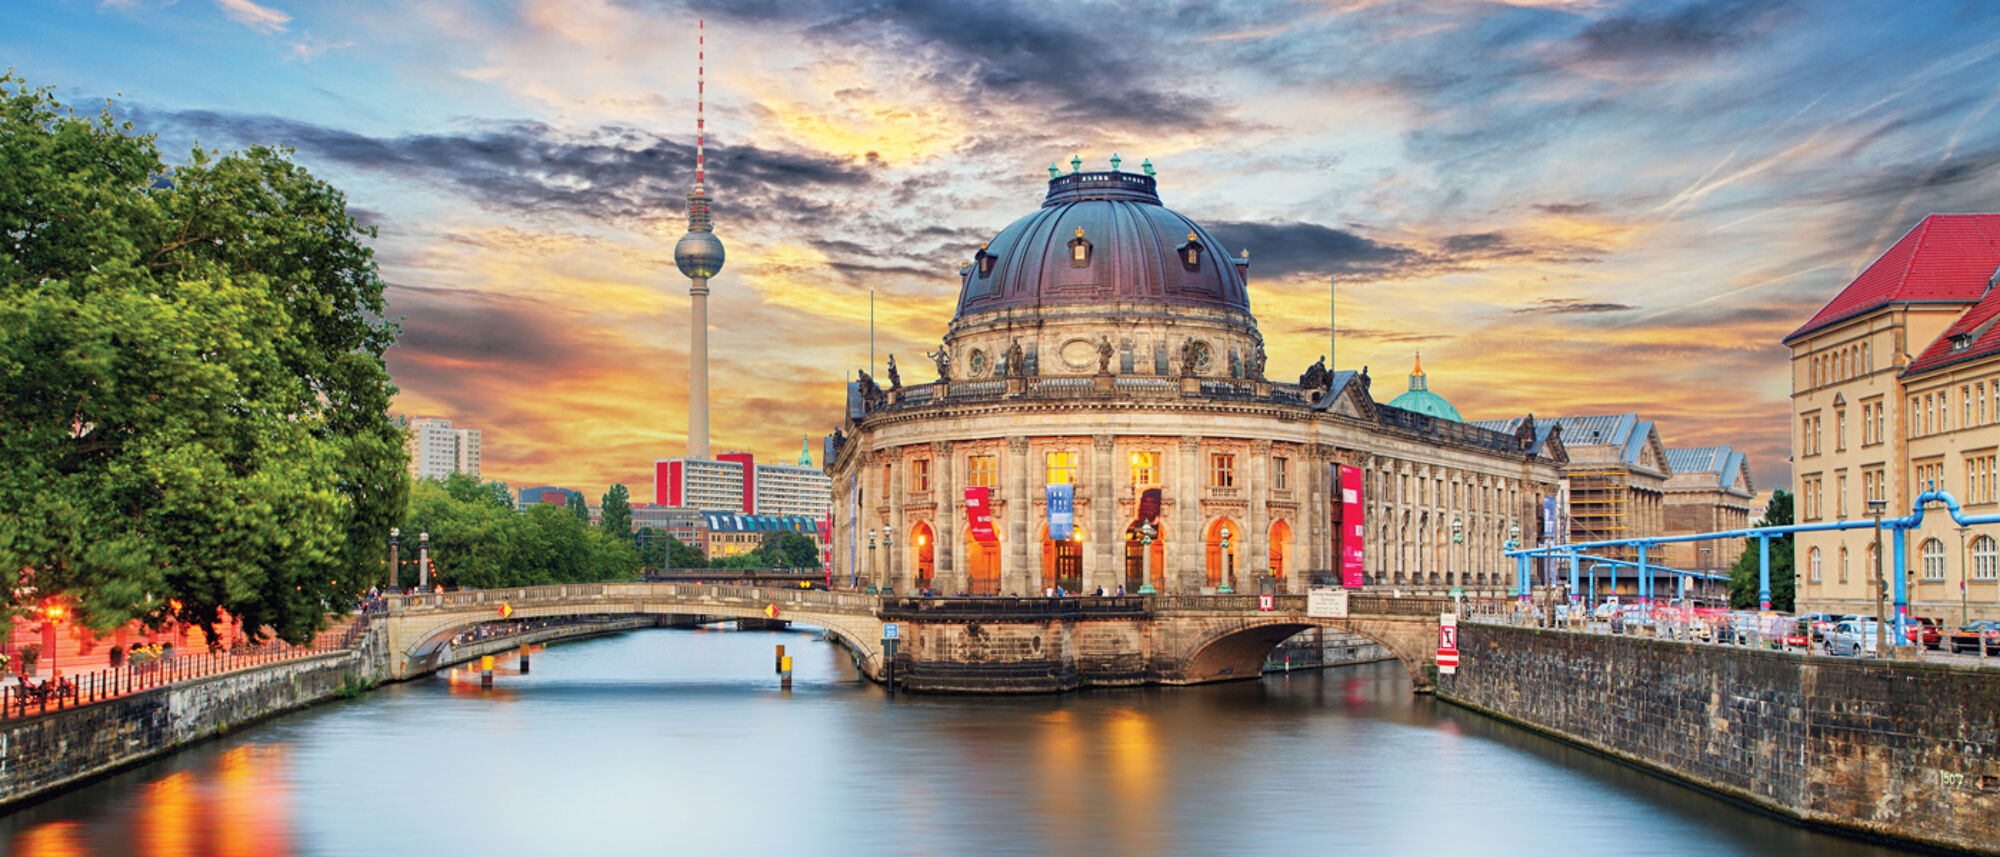 Berlin at sunset (photo: Shutterstock)